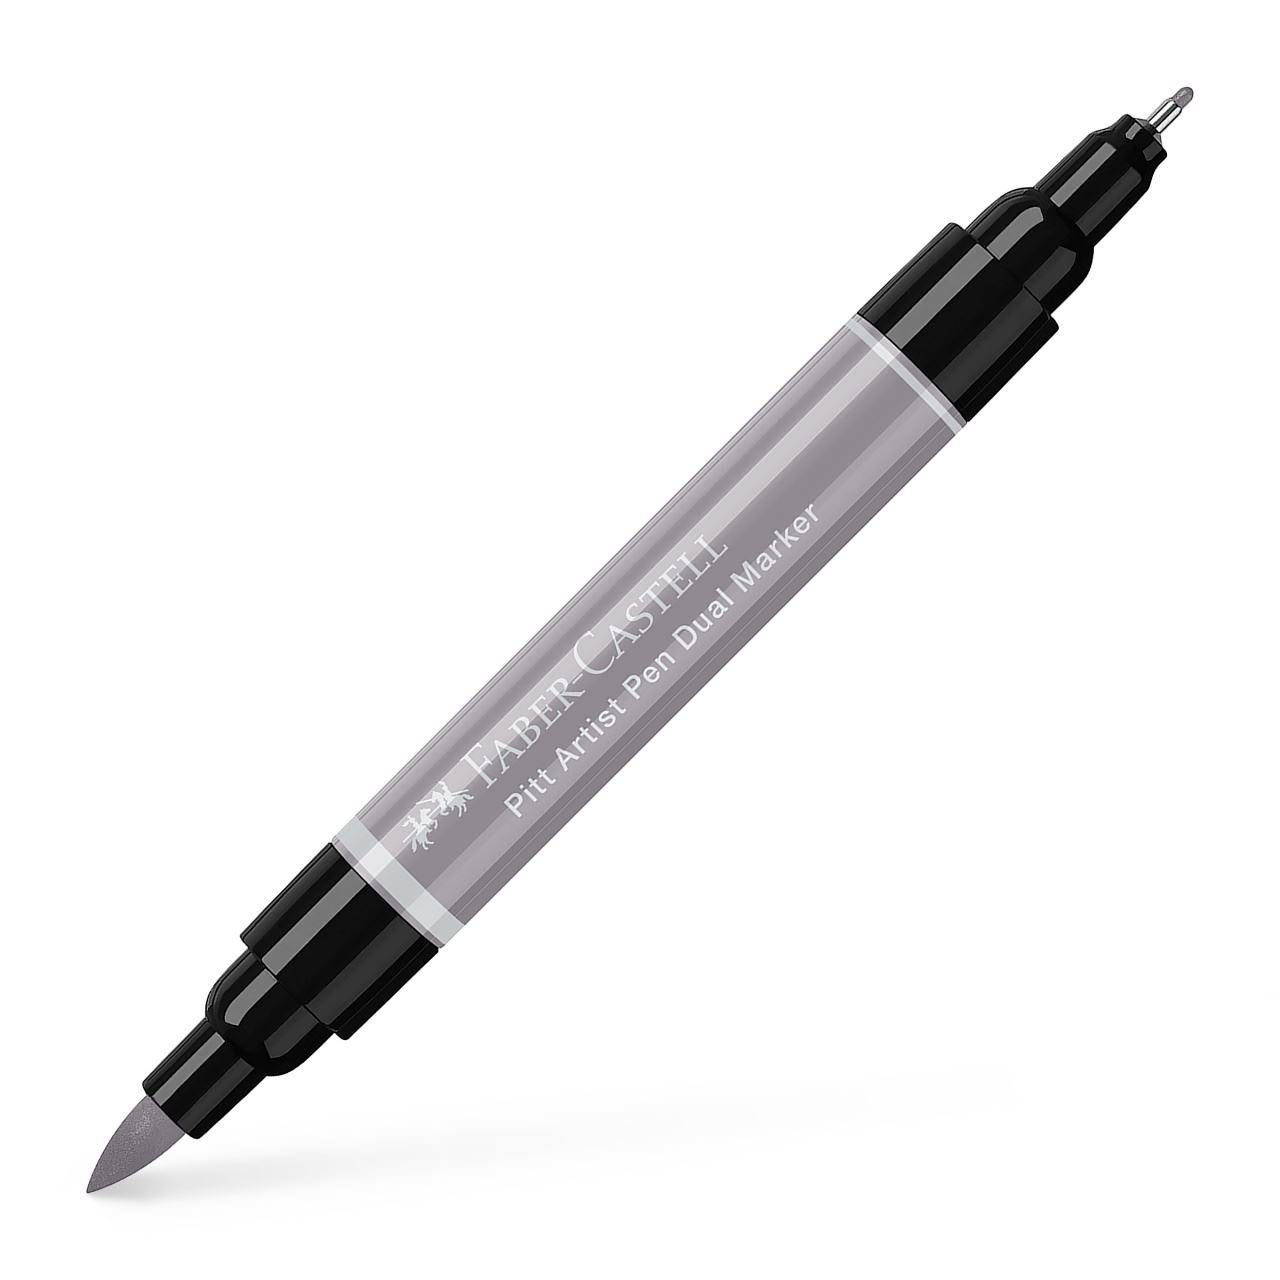 Faber-Castell - Pitt Artist Pen Dual Marker, gris cálido III